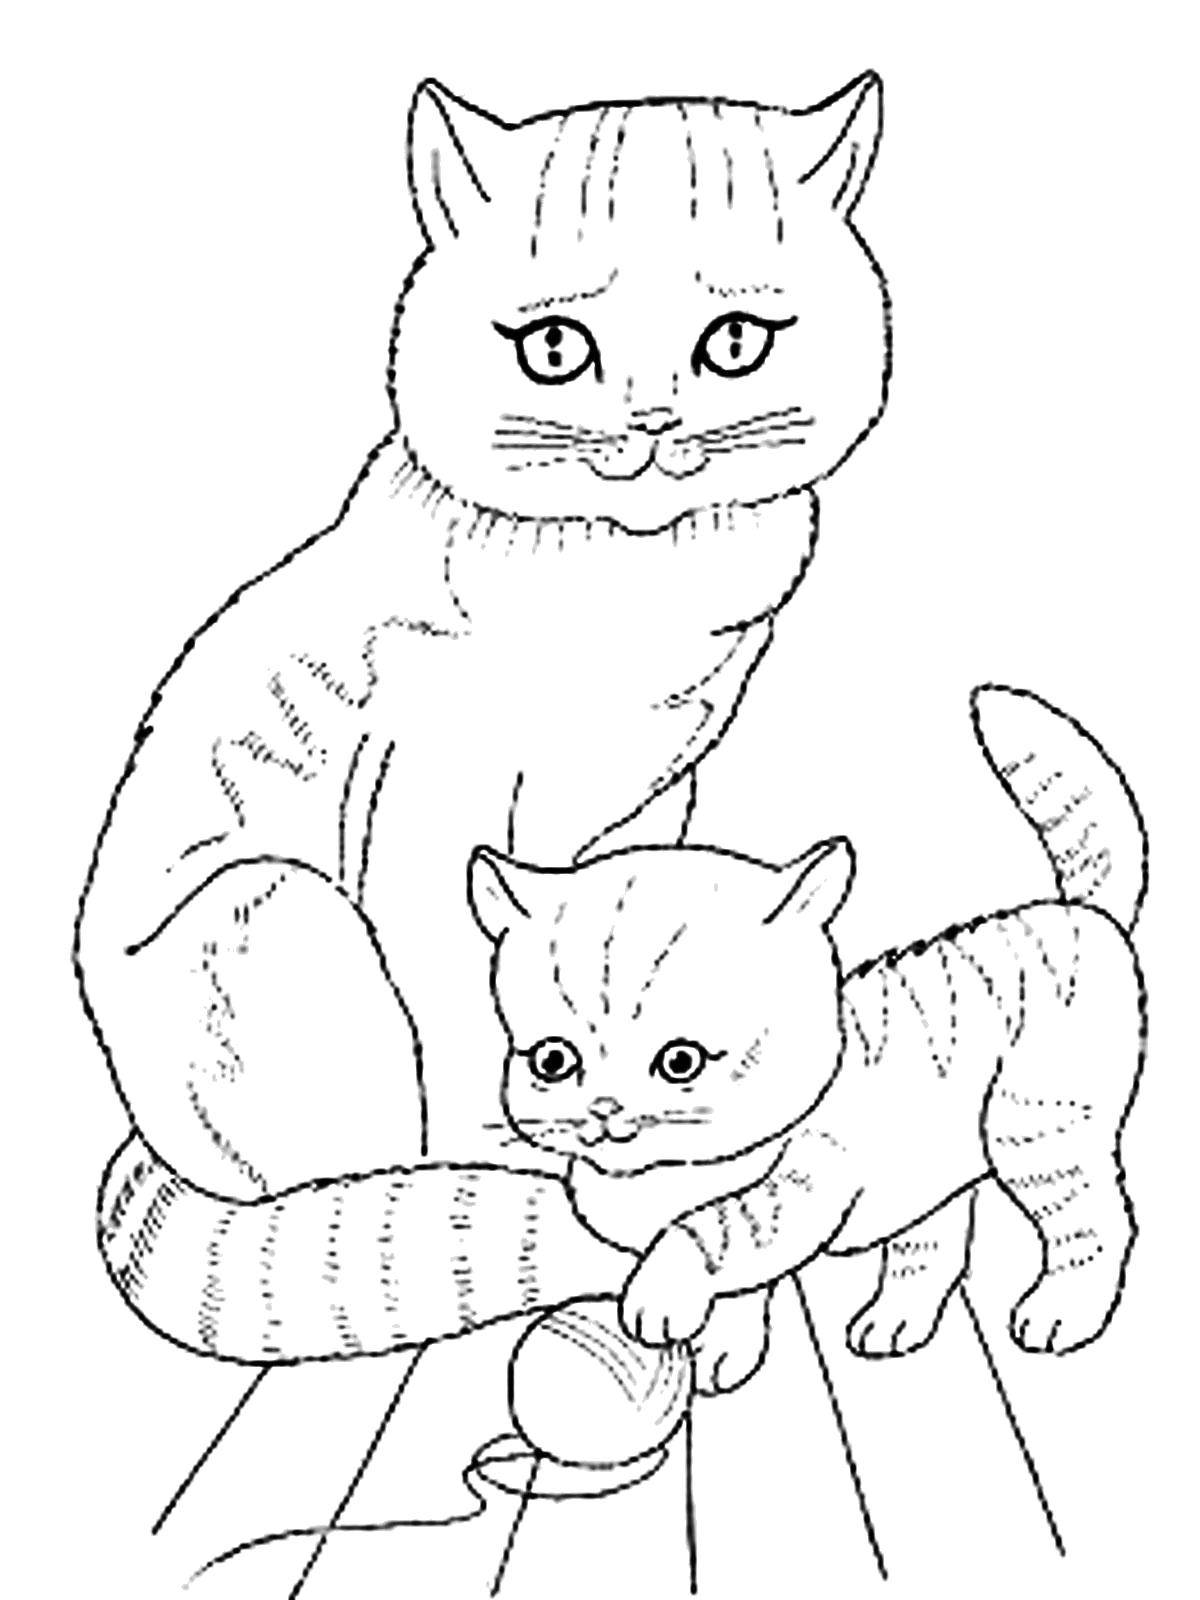 Название: Раскраска Котёнок играет возле мамы. Категория: домашние животные. Теги: Животные, котёнок.